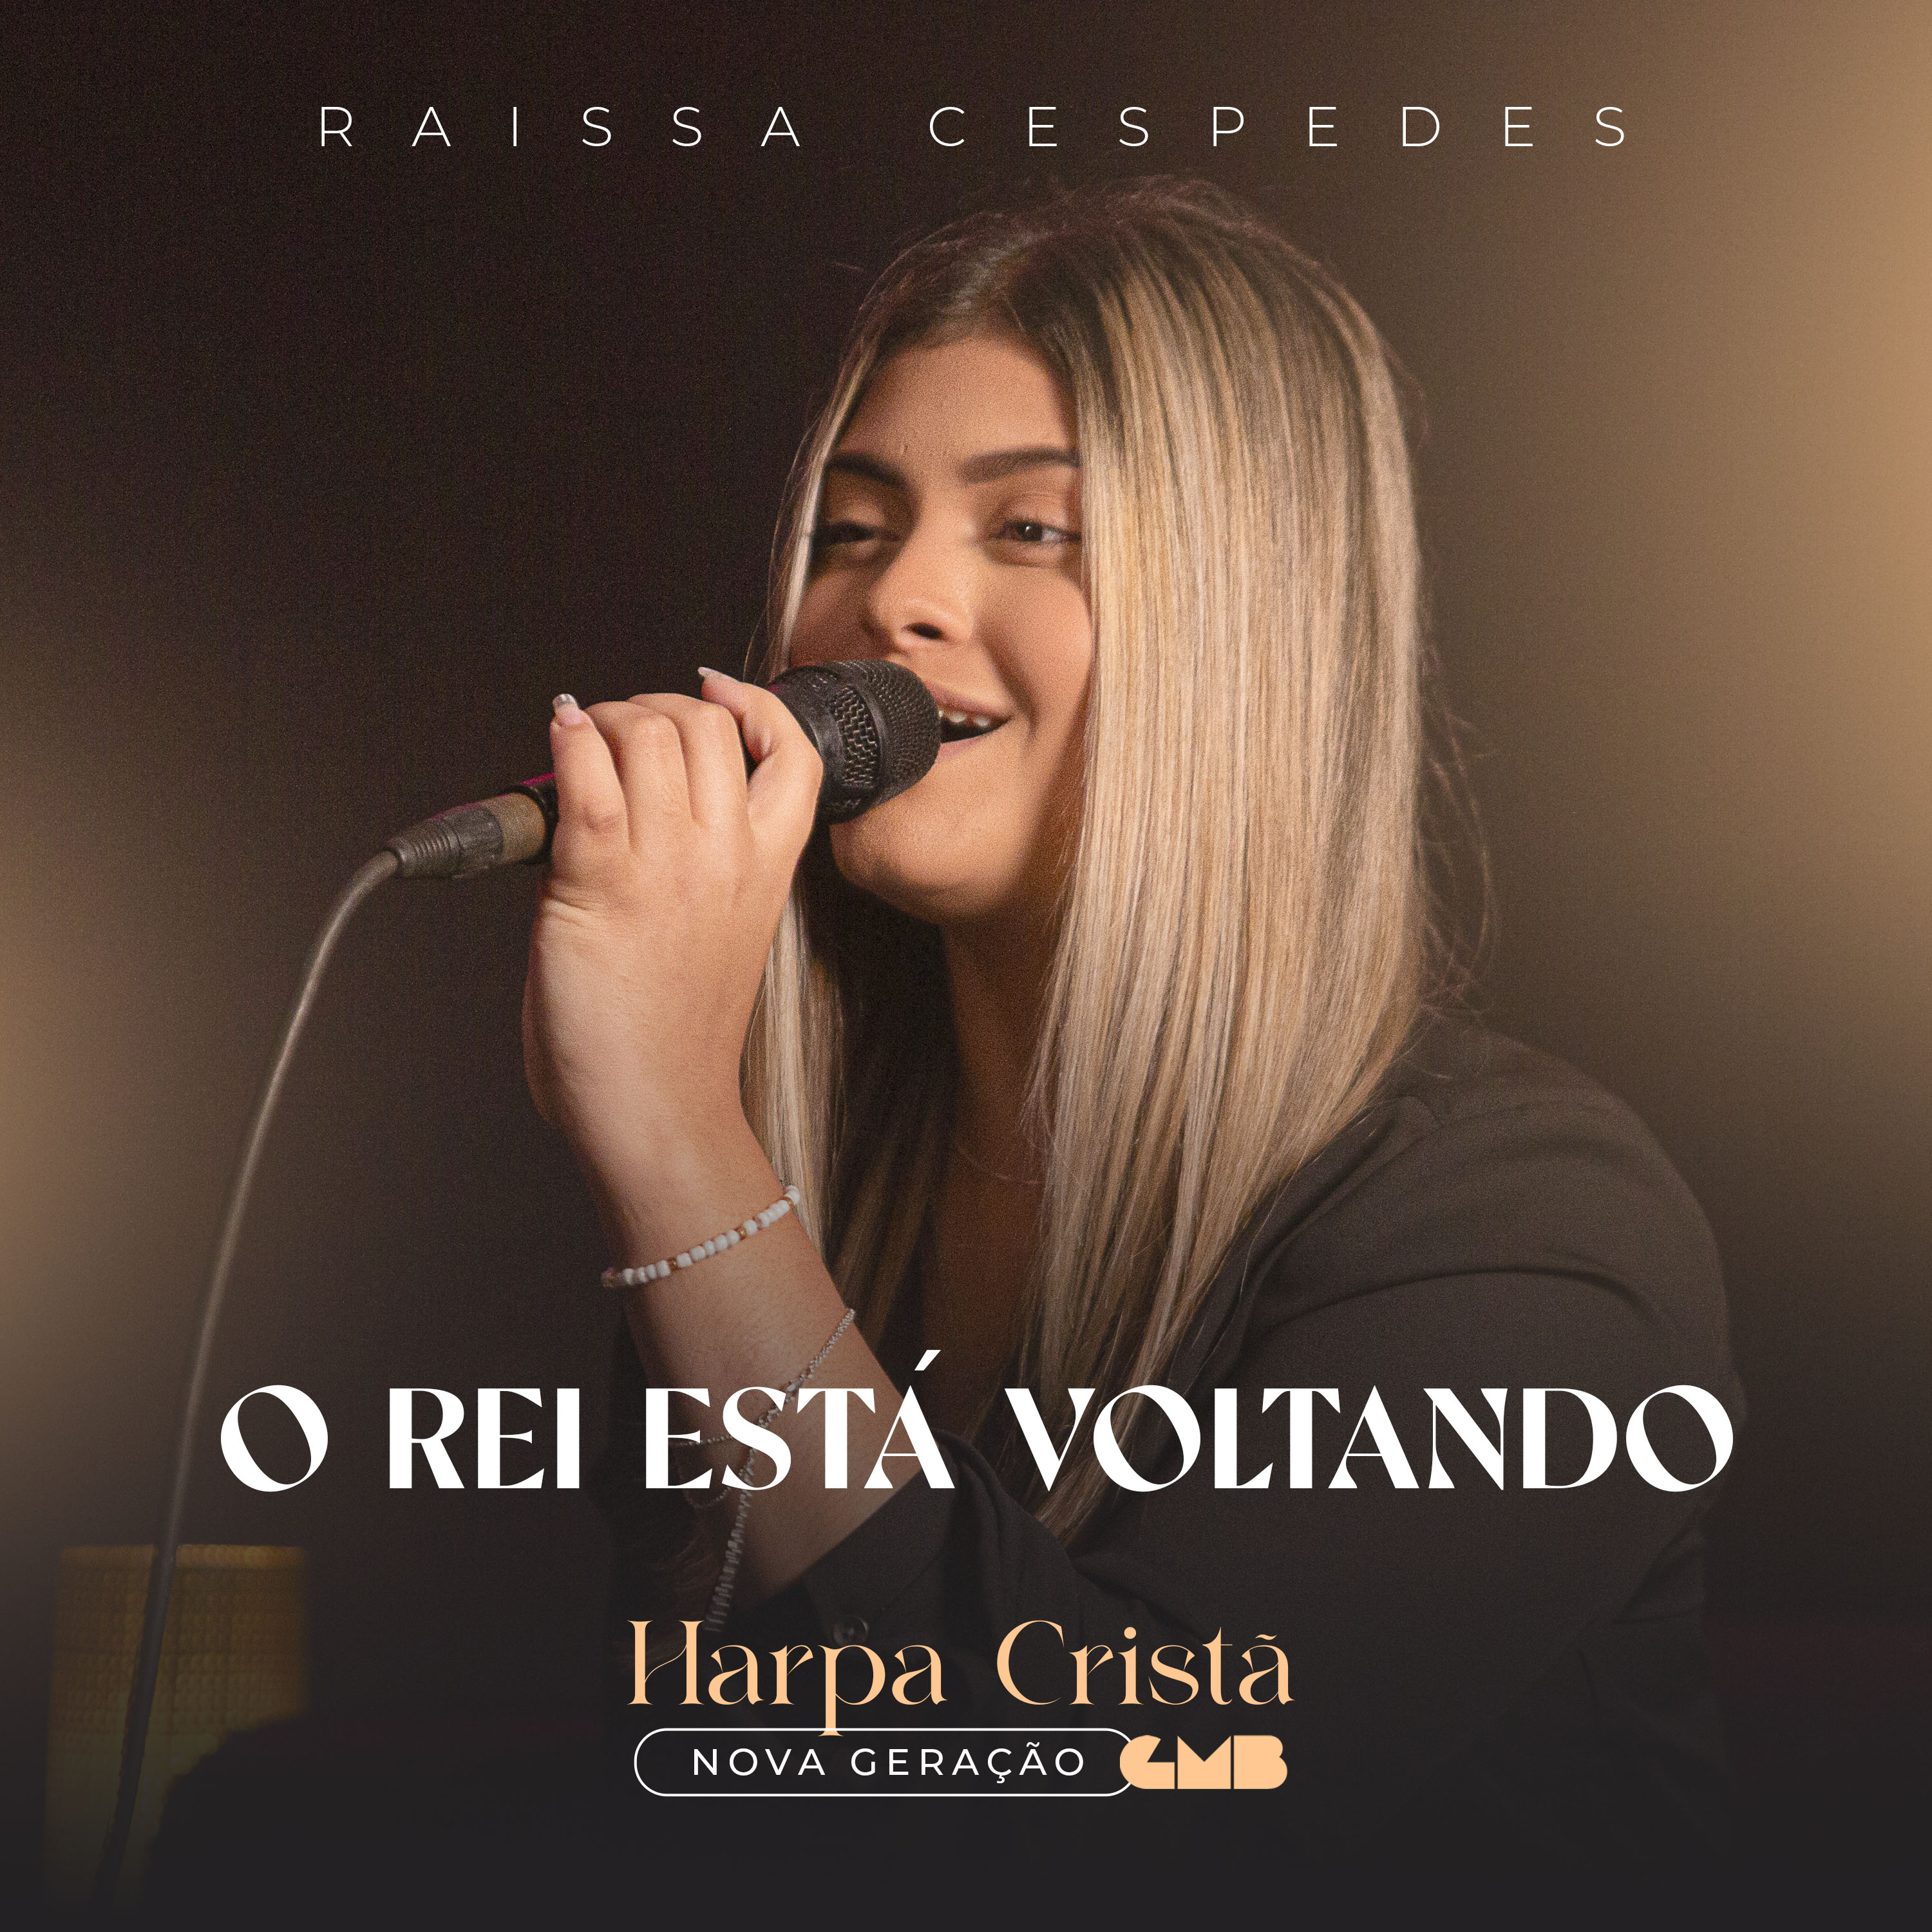 A jovem cantora Raissa Cespedes interpreta lindamente o clássico cristão “O Rei Está Voltando”